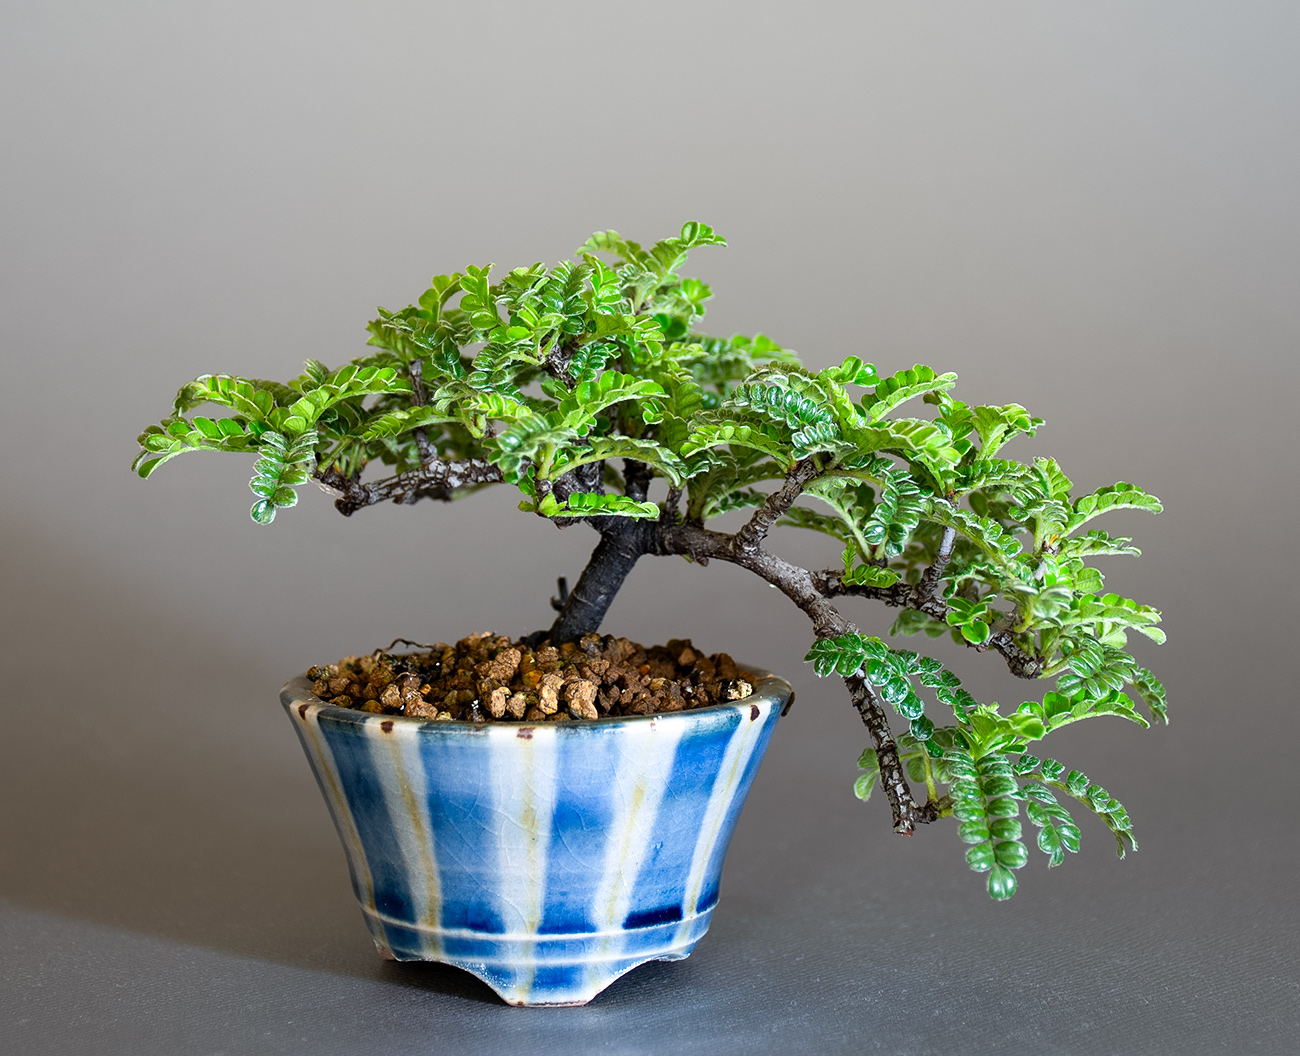 イソザンショウ-U（いそざんしょう・磯山椒）雑木盆栽の販売と育て方・作り方・Osteomeles subrotunda Hance bonsai